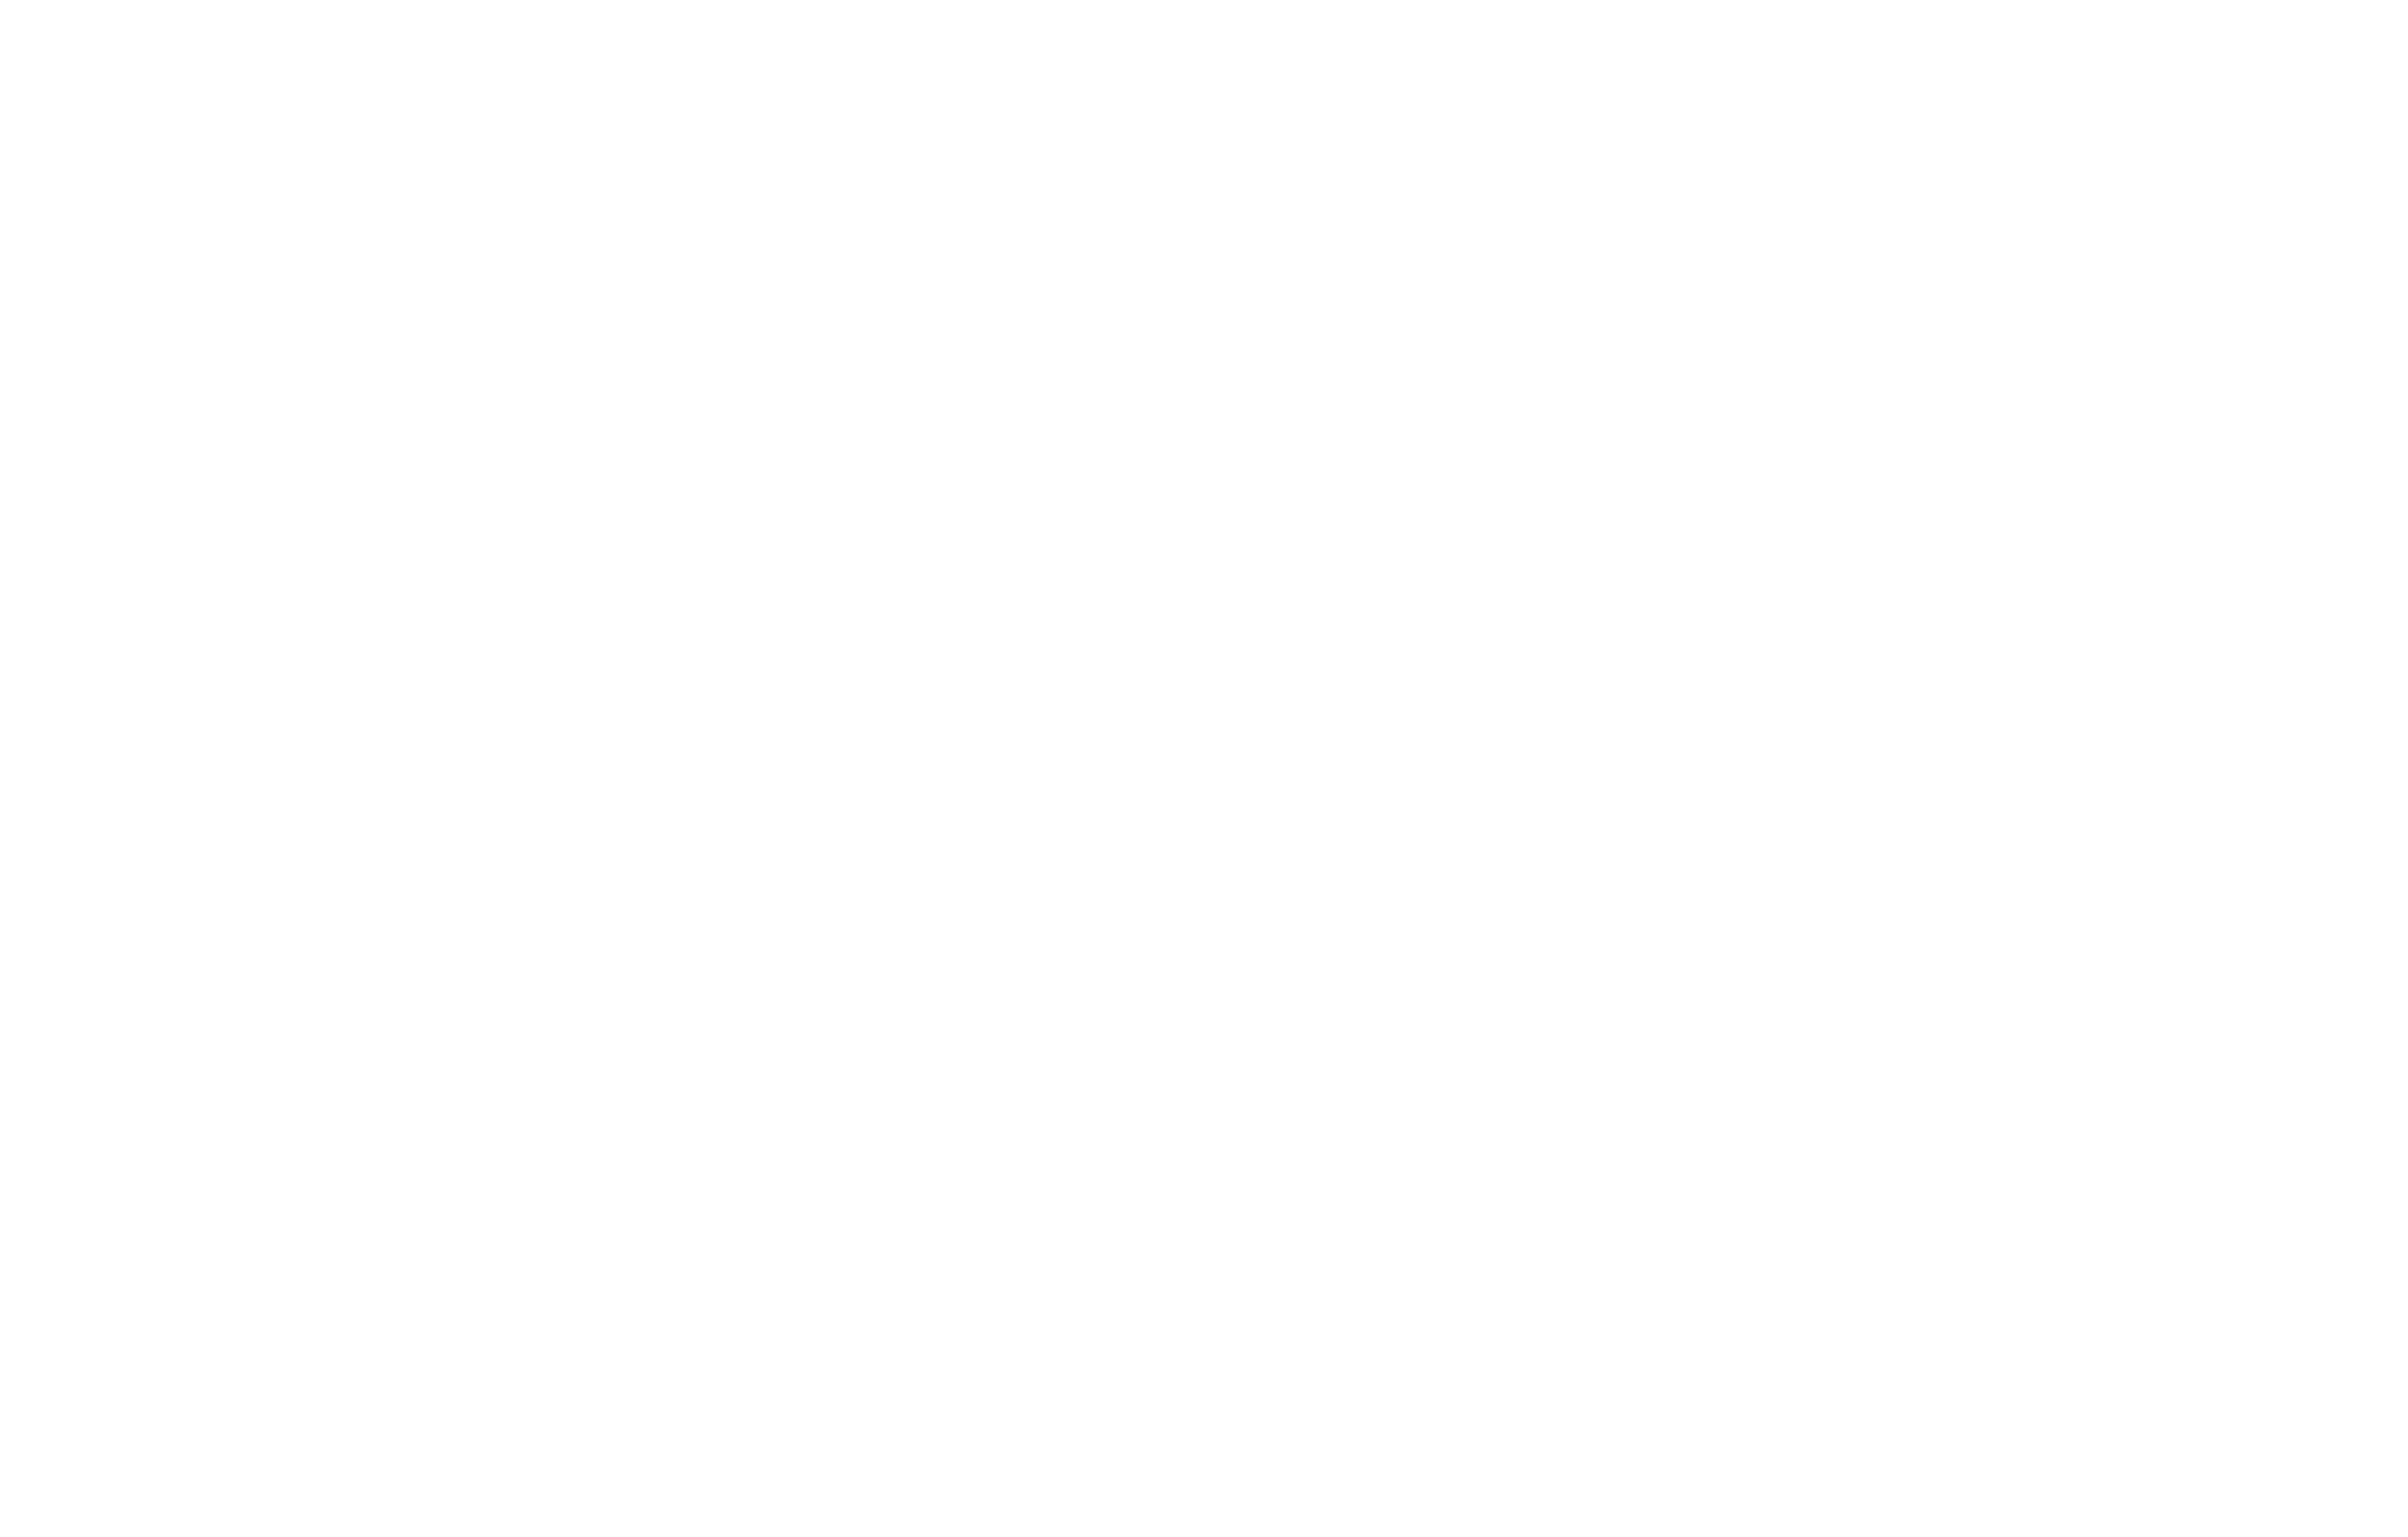 HunterSafetyCourse.com